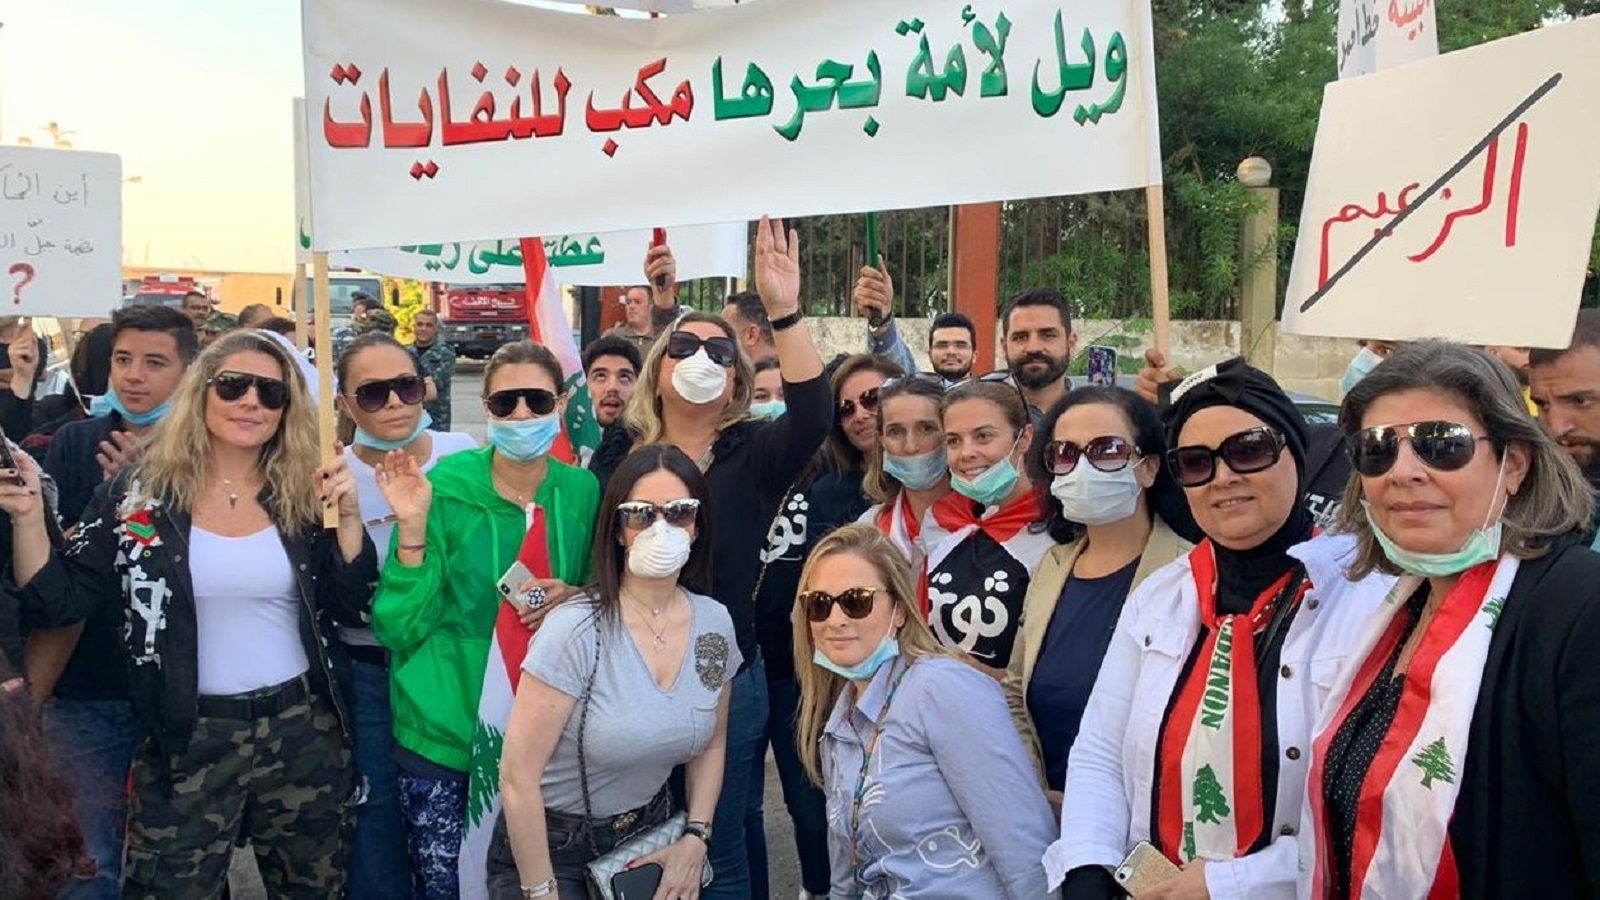 ثورة طرابلس بيئية أيضاً.. ضد "جبل الموت"